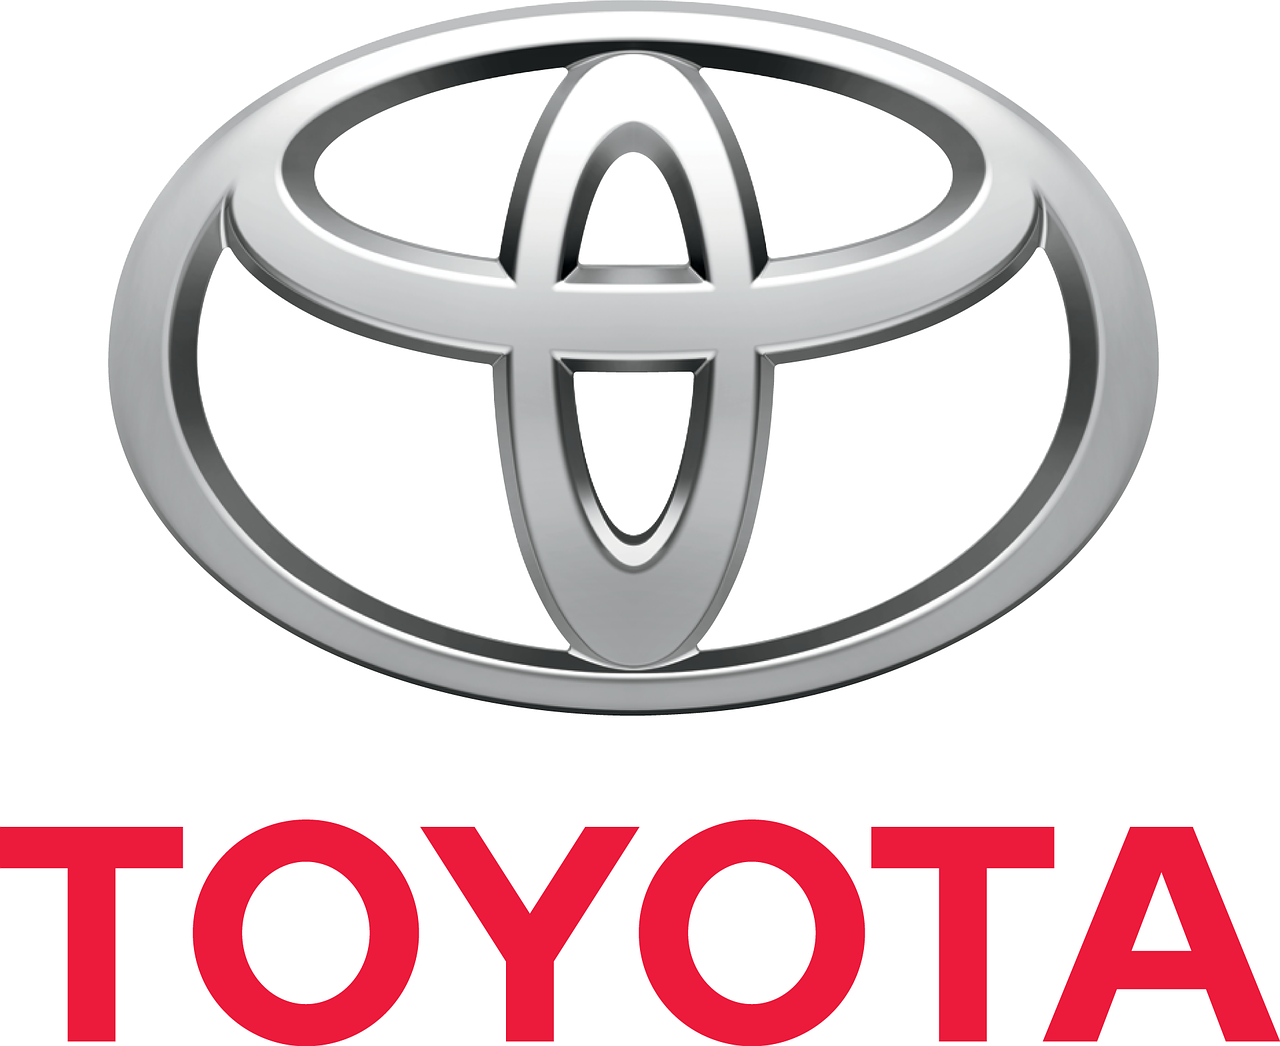 Toyota doors open up recall notice